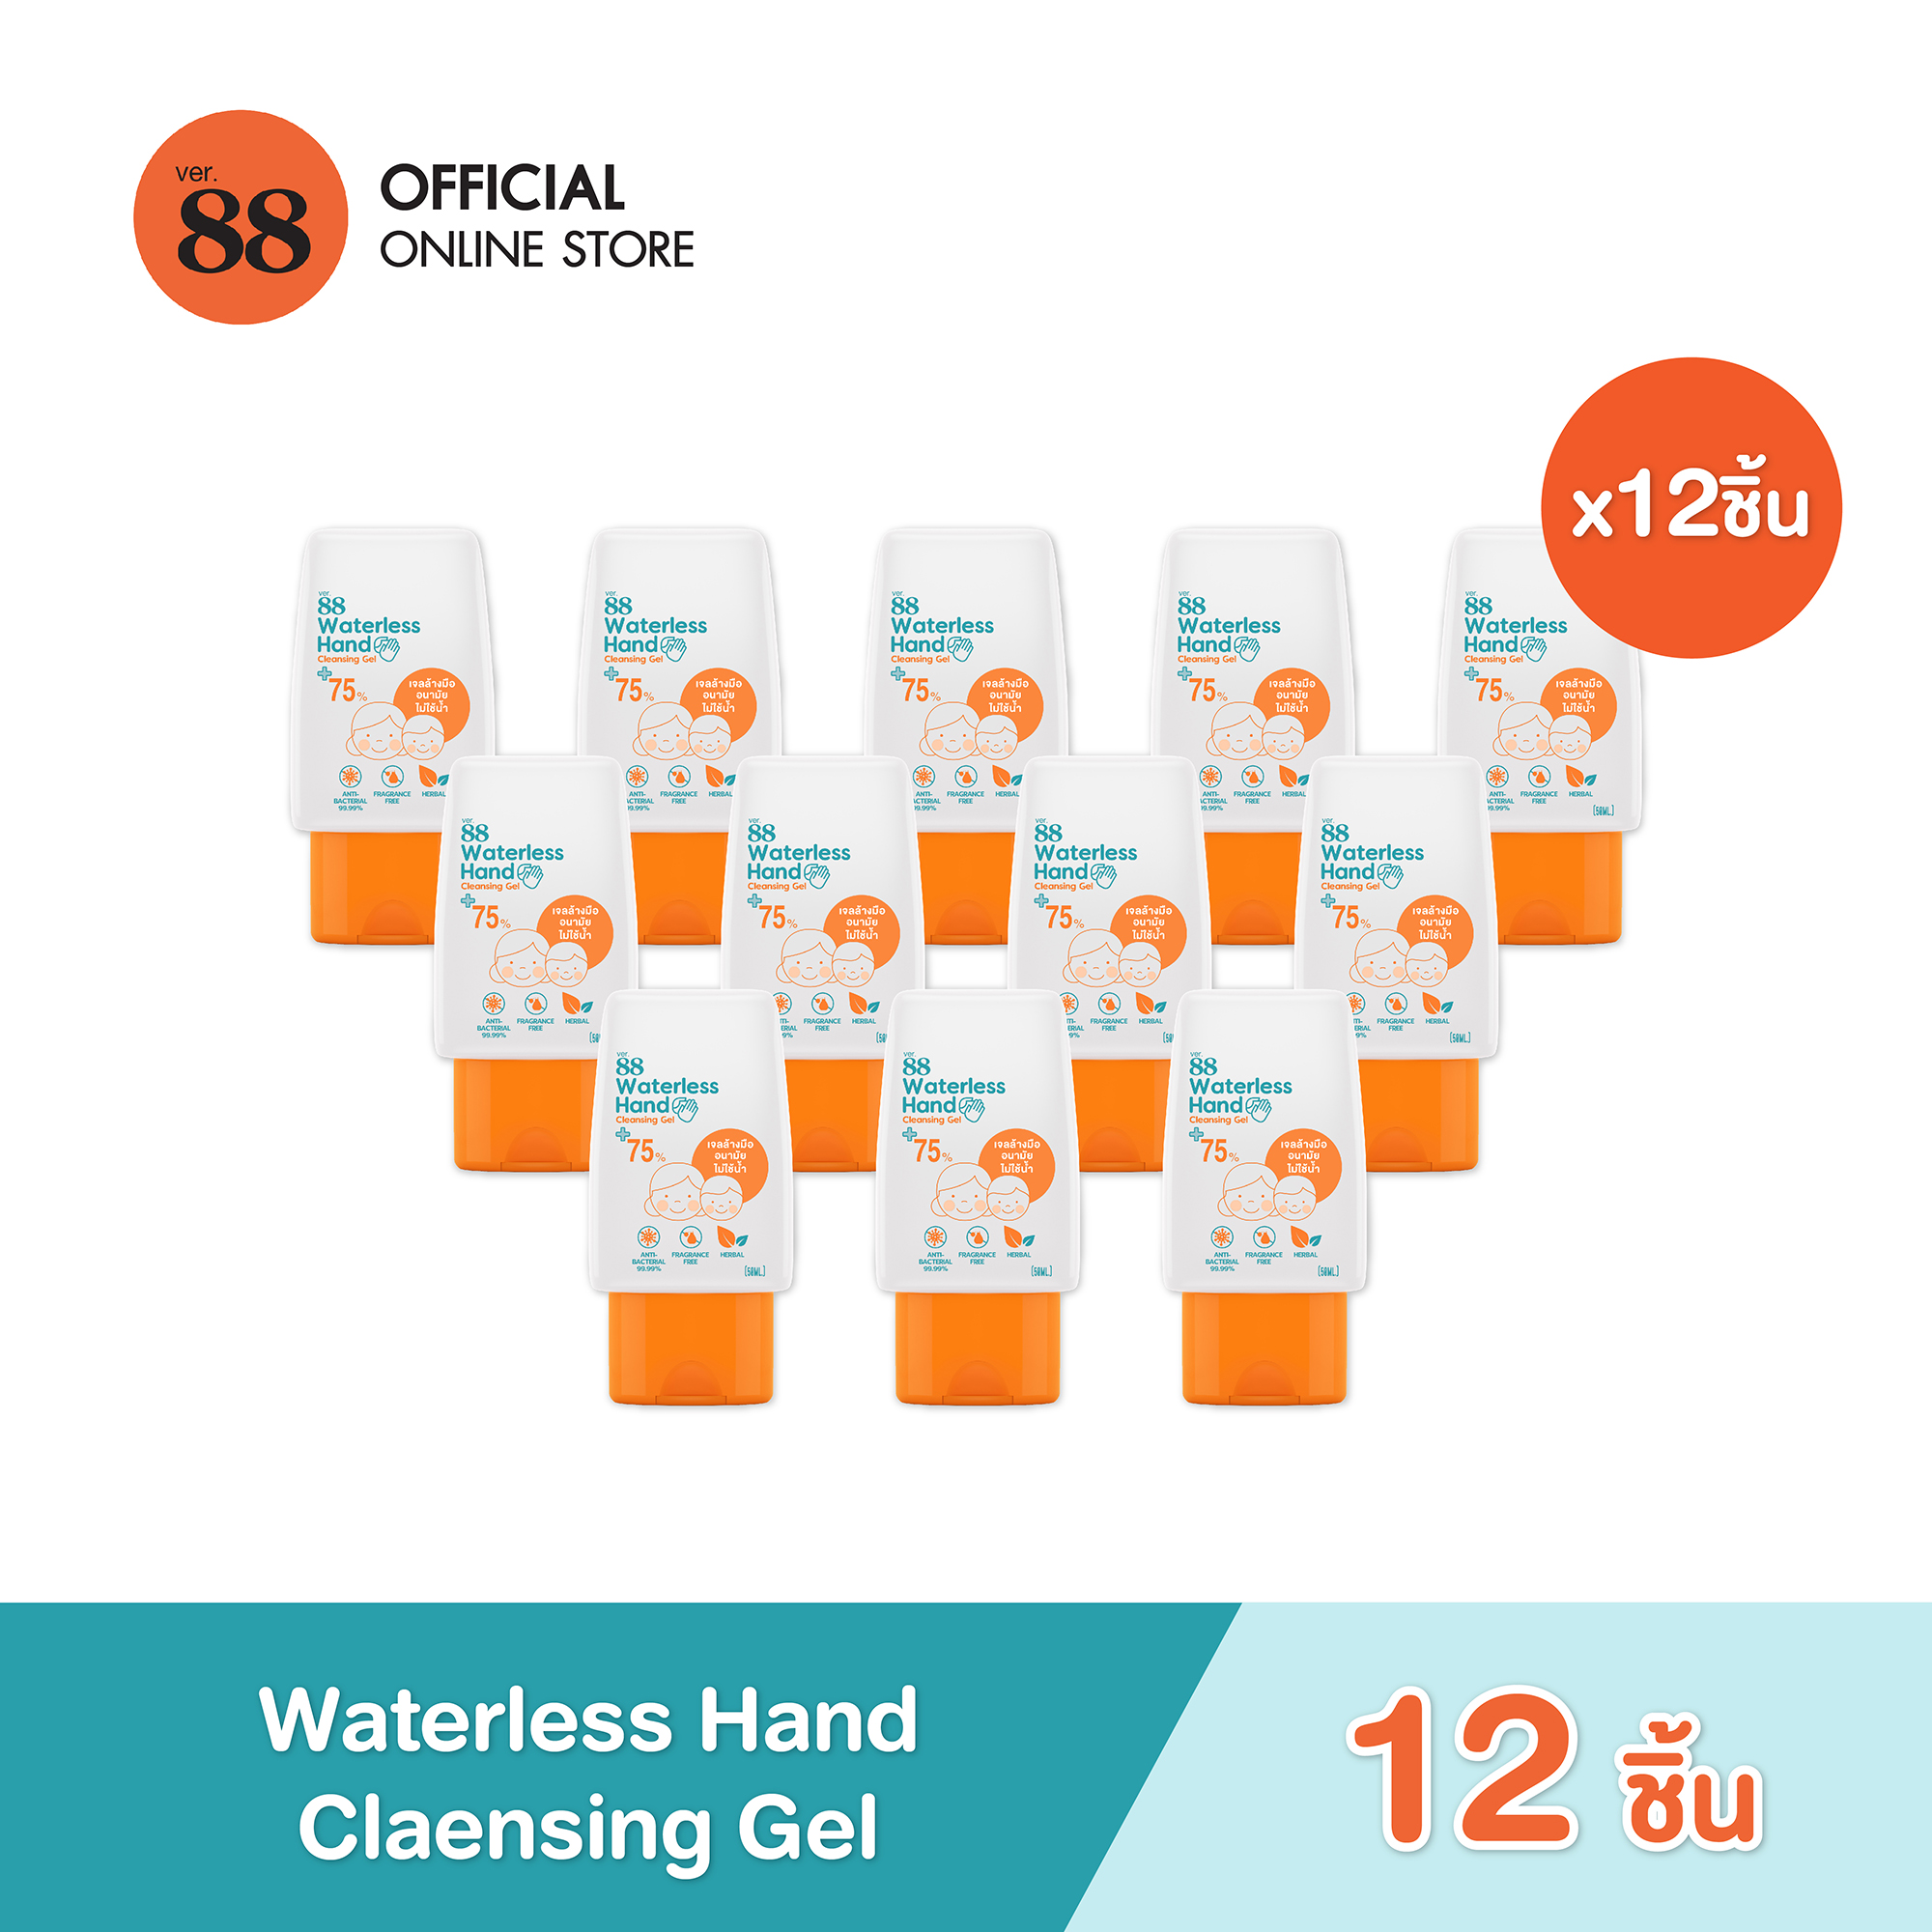 VER.88 WATERLESS HAND CLEANSING GEL